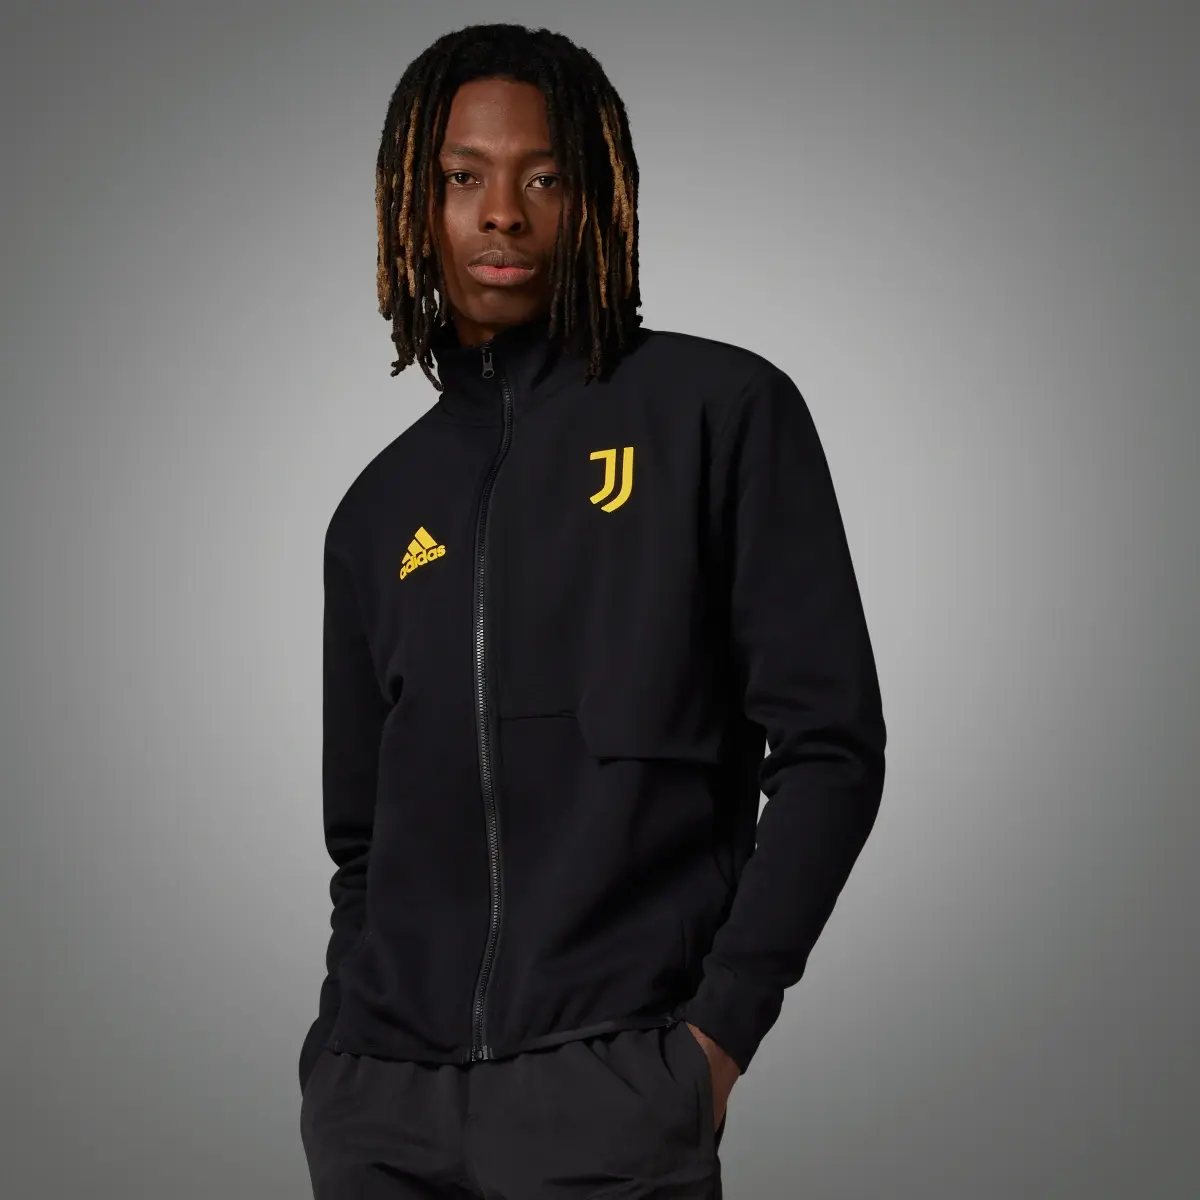 Adidas Juventus Anthem Jacket. 1